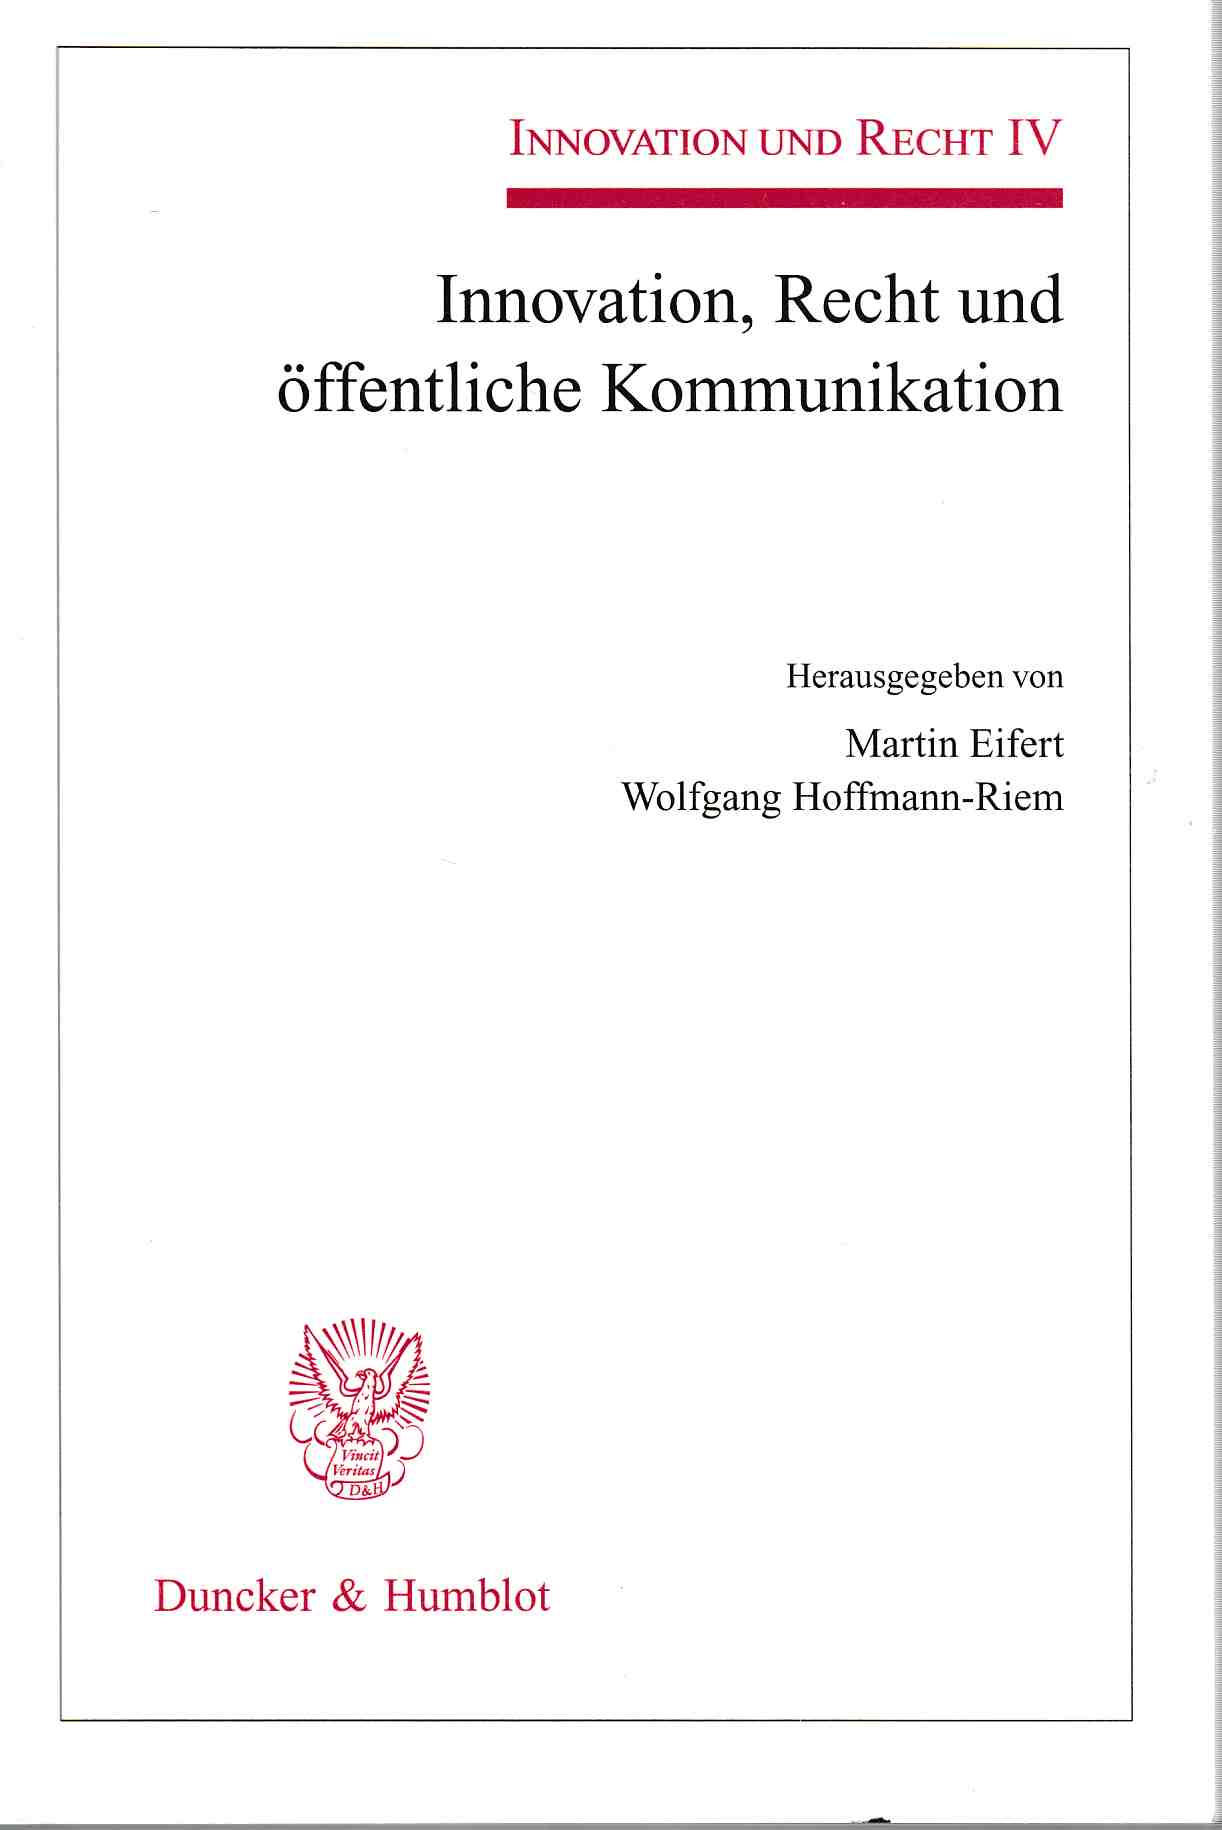 Innovation, Recht und öffentliche Kommunikation. Innovation und Recht IV. - Eifert, Martin und Wolfgang Hoffmann-Riem (Hrsg.)